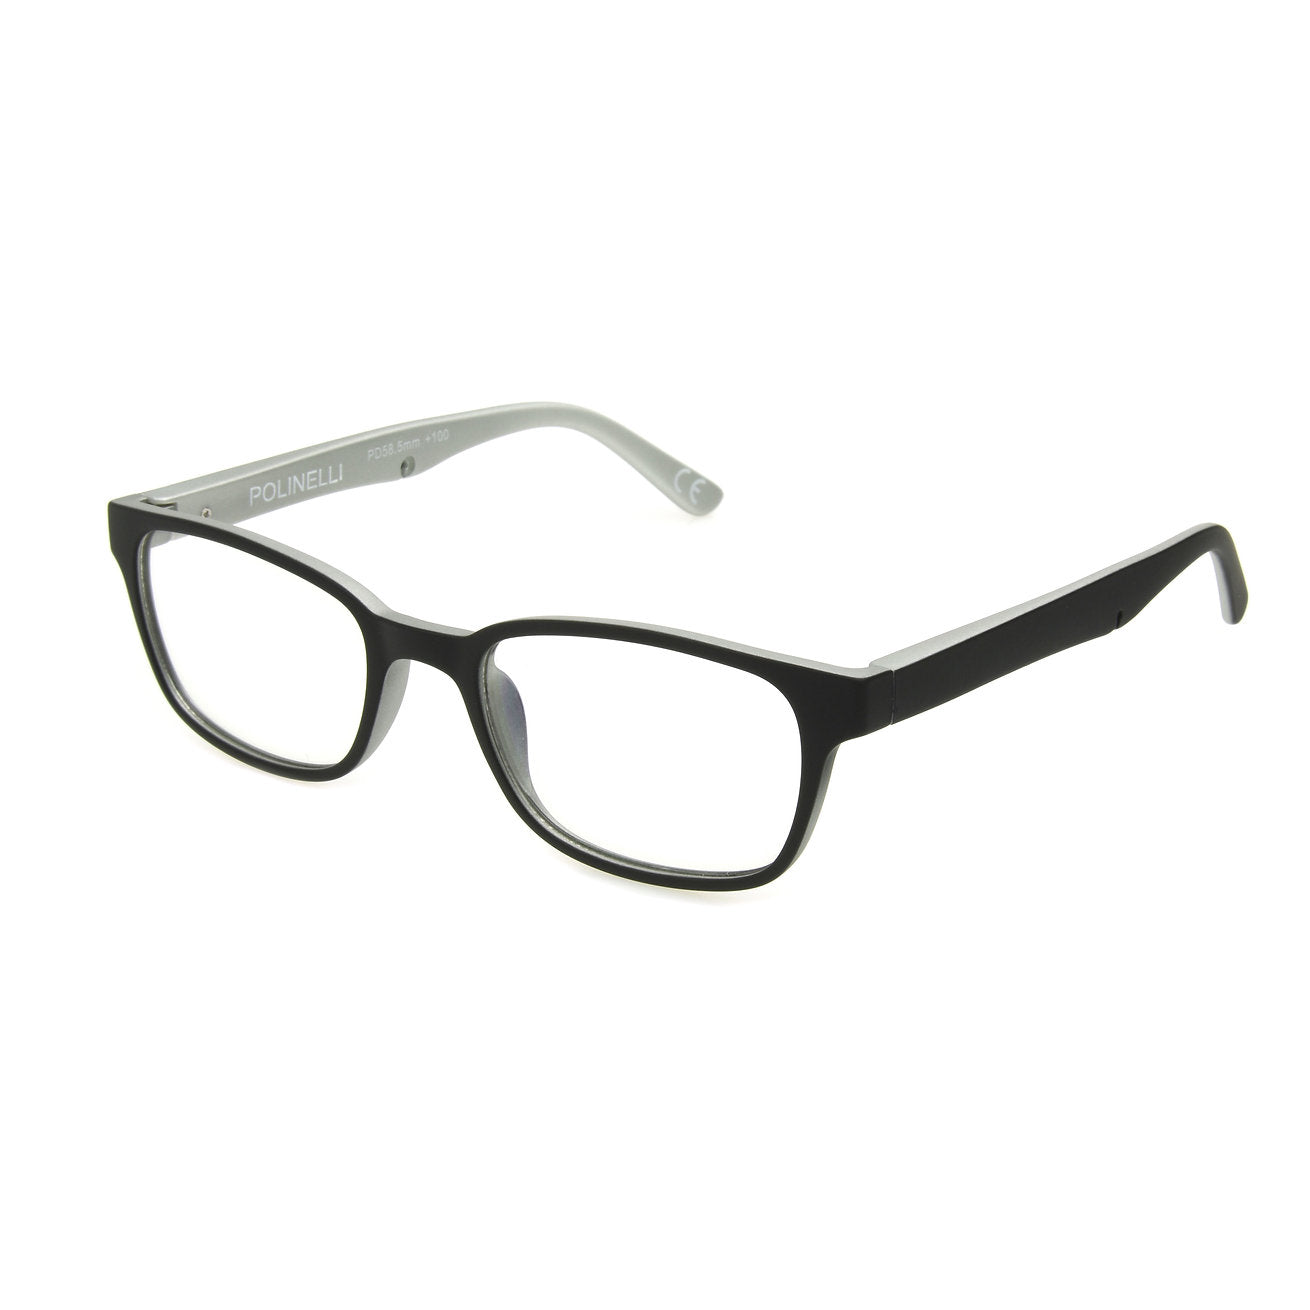 Polinelli eyeglasses model P306 gray